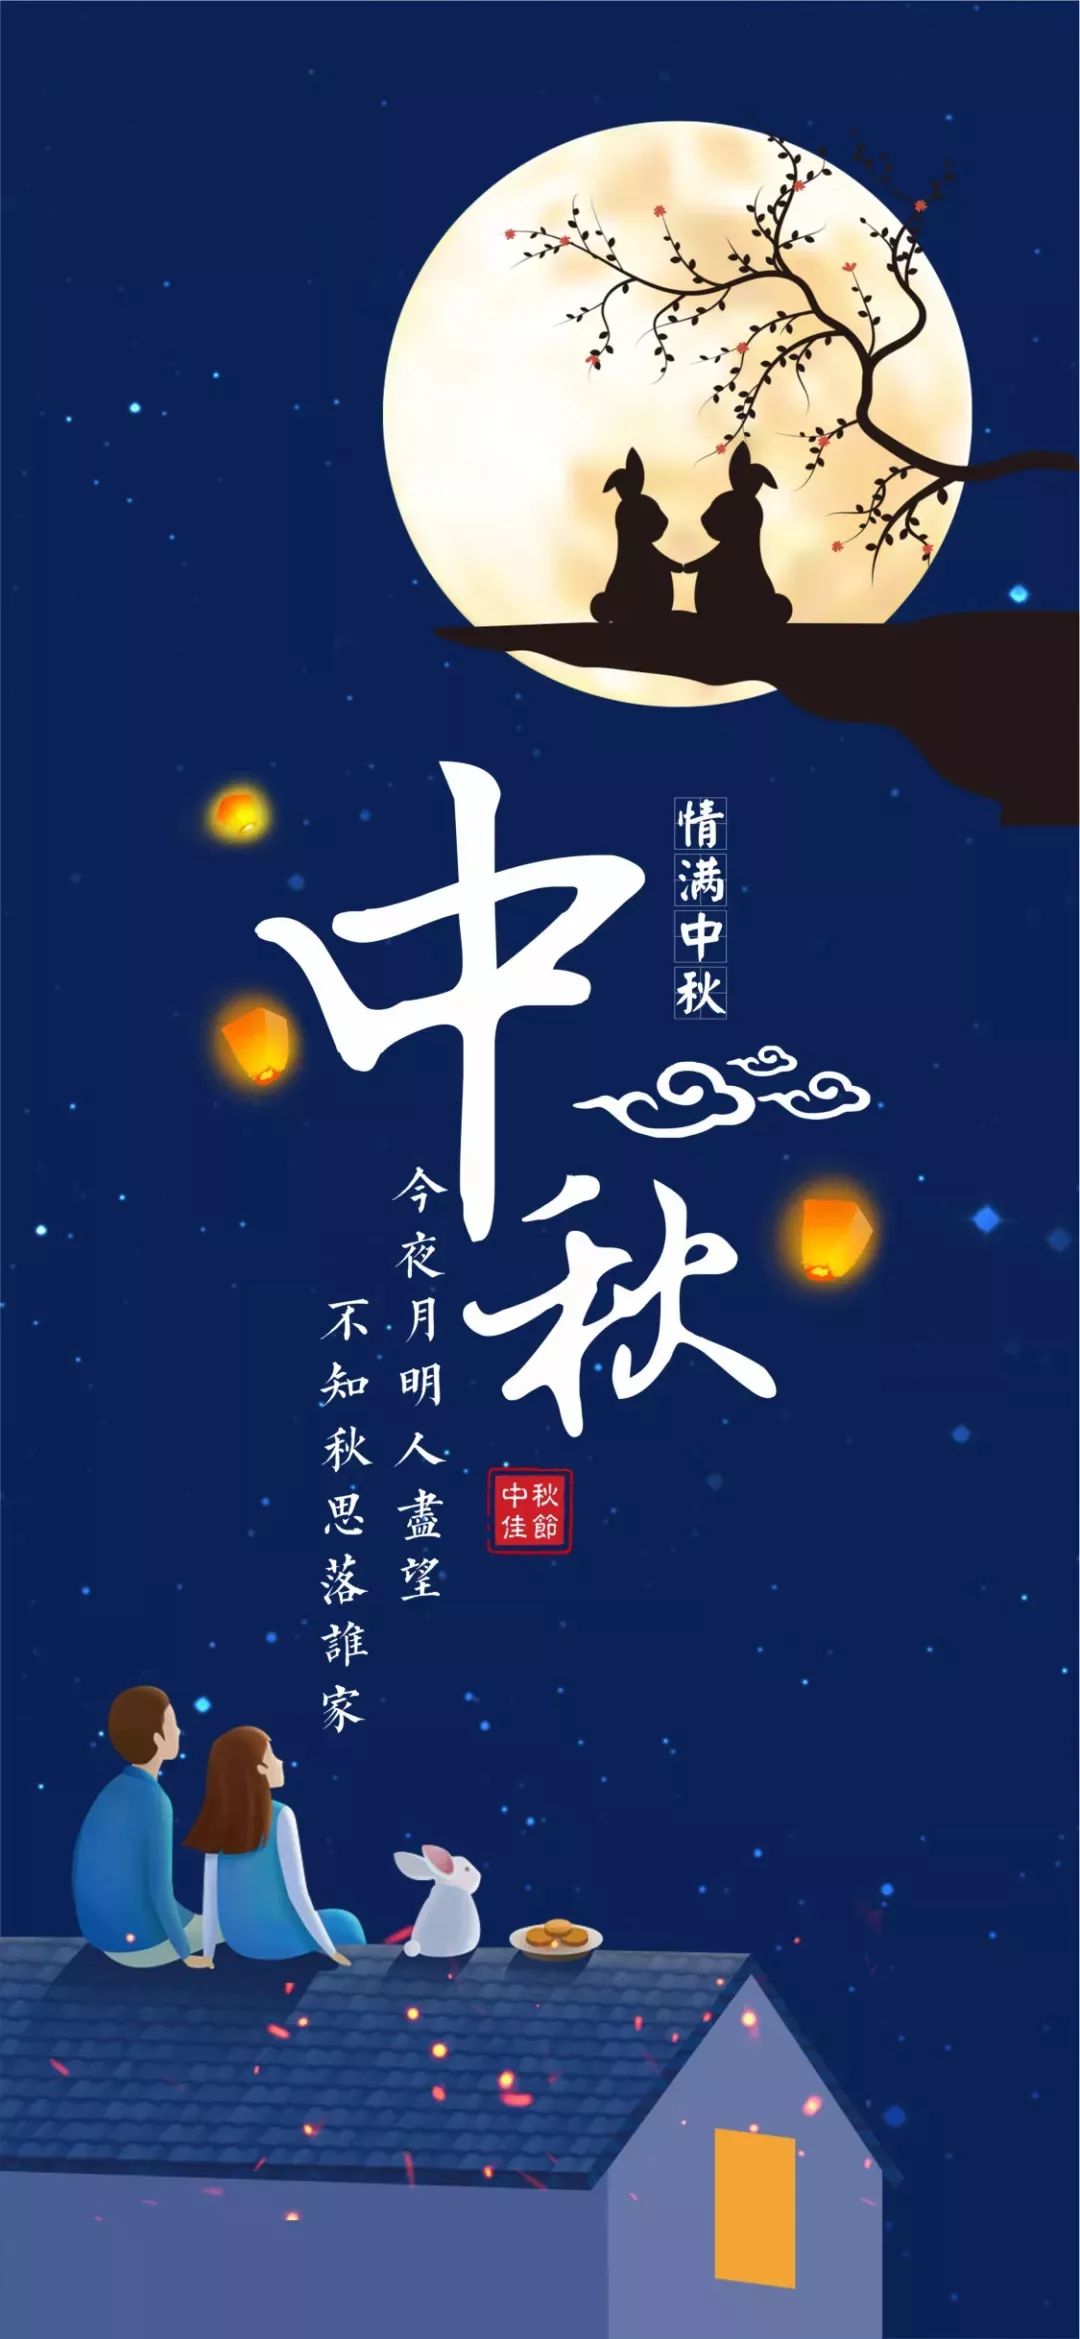 农历八月十五是我国的传统节日—中秋节,与春节,清明节,端午节是